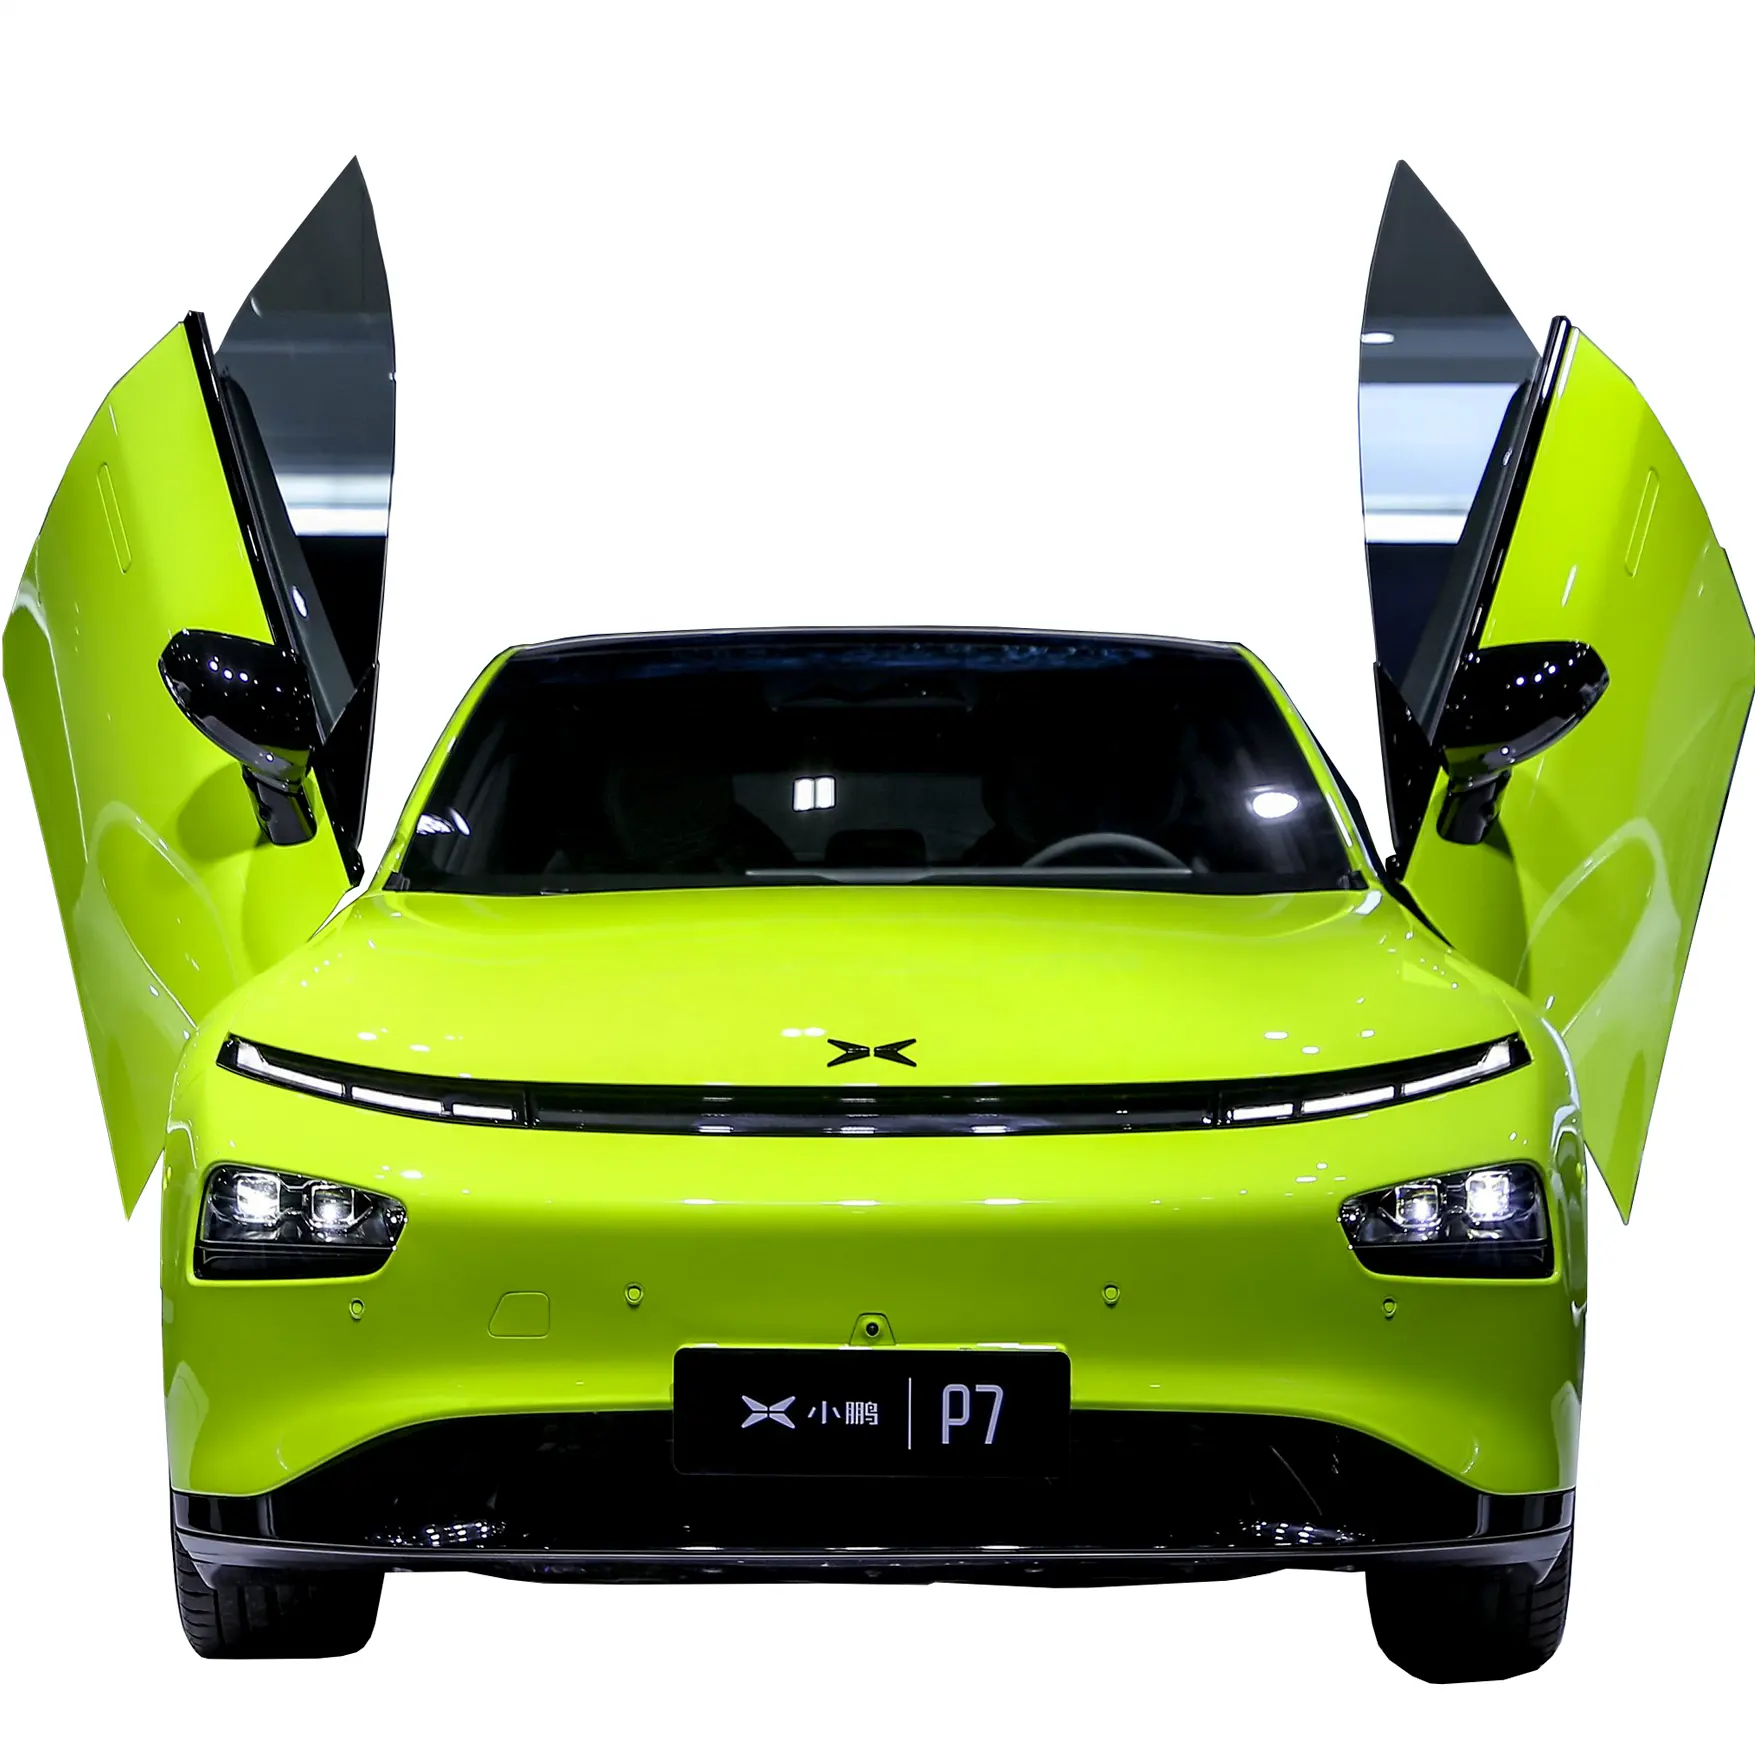 Xpeng p7 480/586/670/706 км NEDC range 2WD/4WD limousine автомобильный Интеллектуальный электрический автомобиль с Интернетом